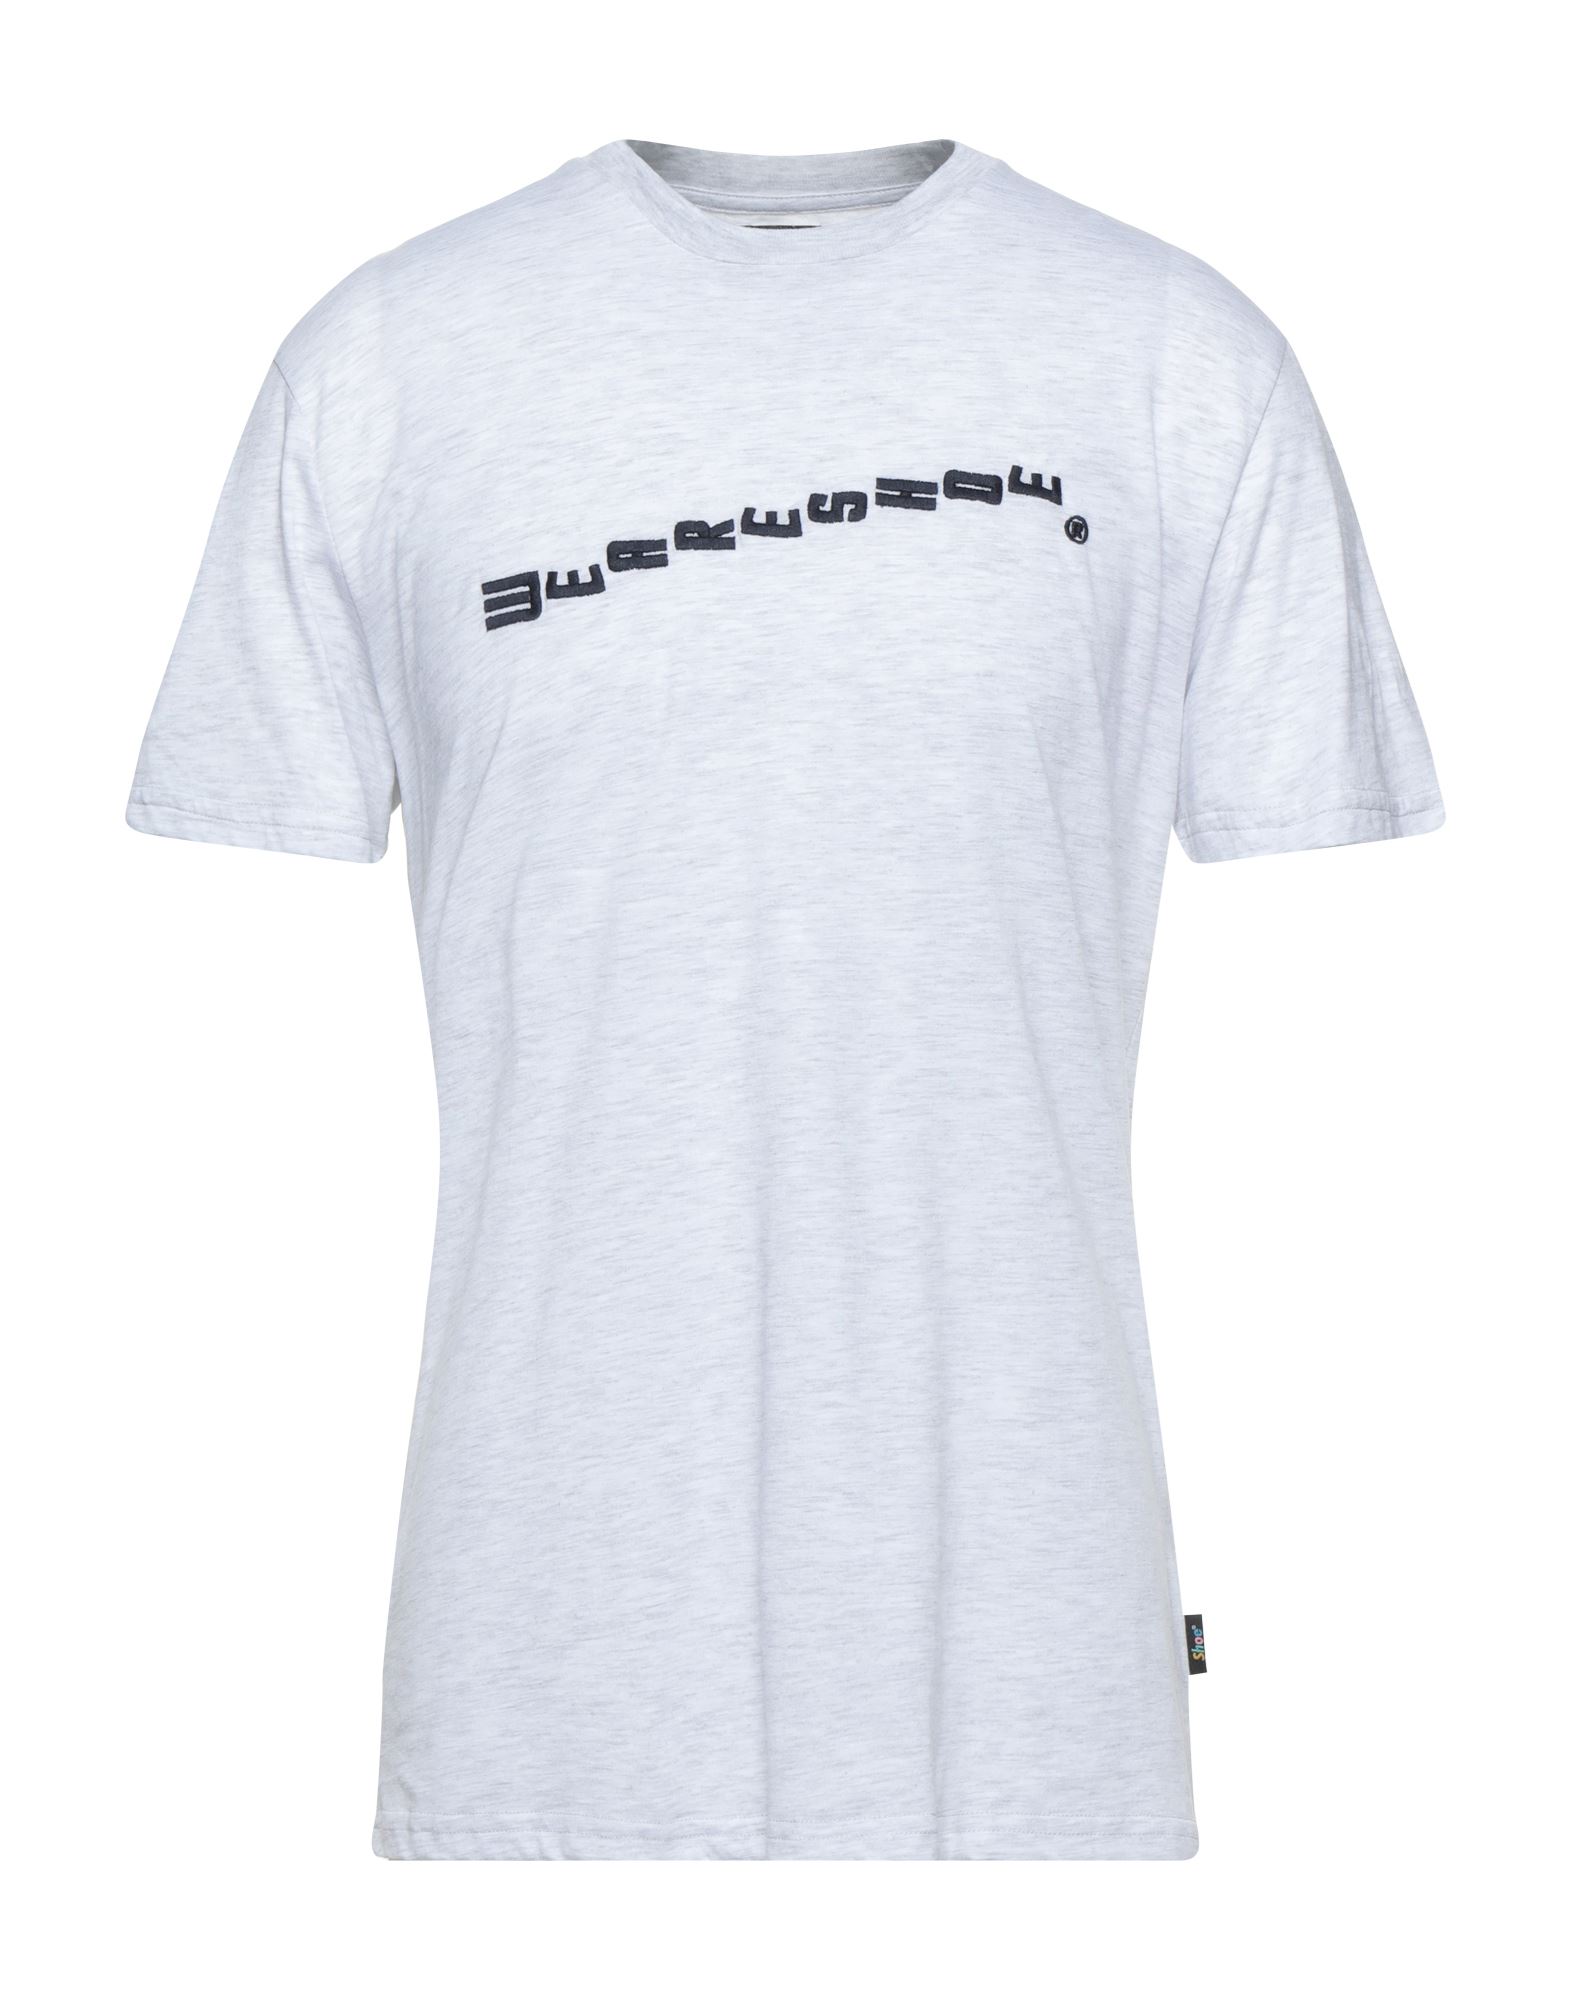 Shop Now For The SHOE® T-shirts | Shop